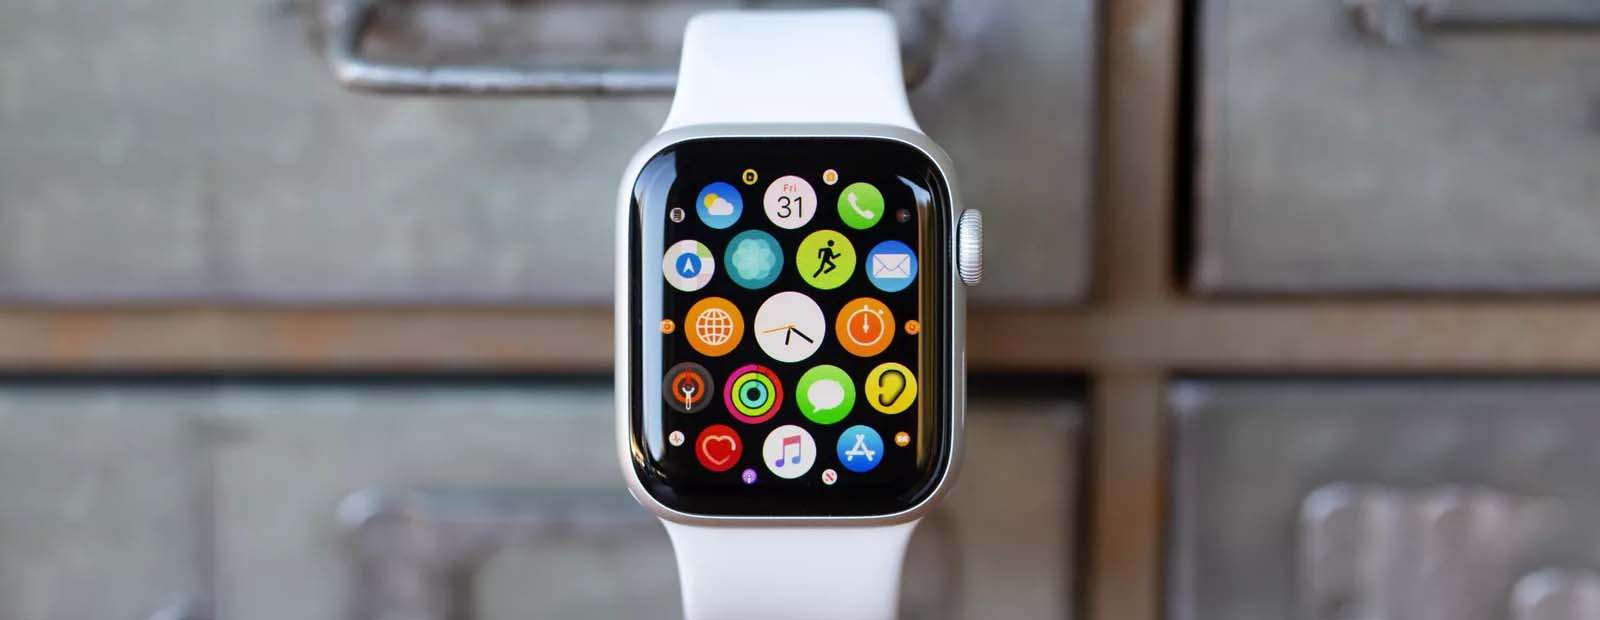 3 мая Apple обновили систему безопасности, выпустив watchOS 7.4.1.